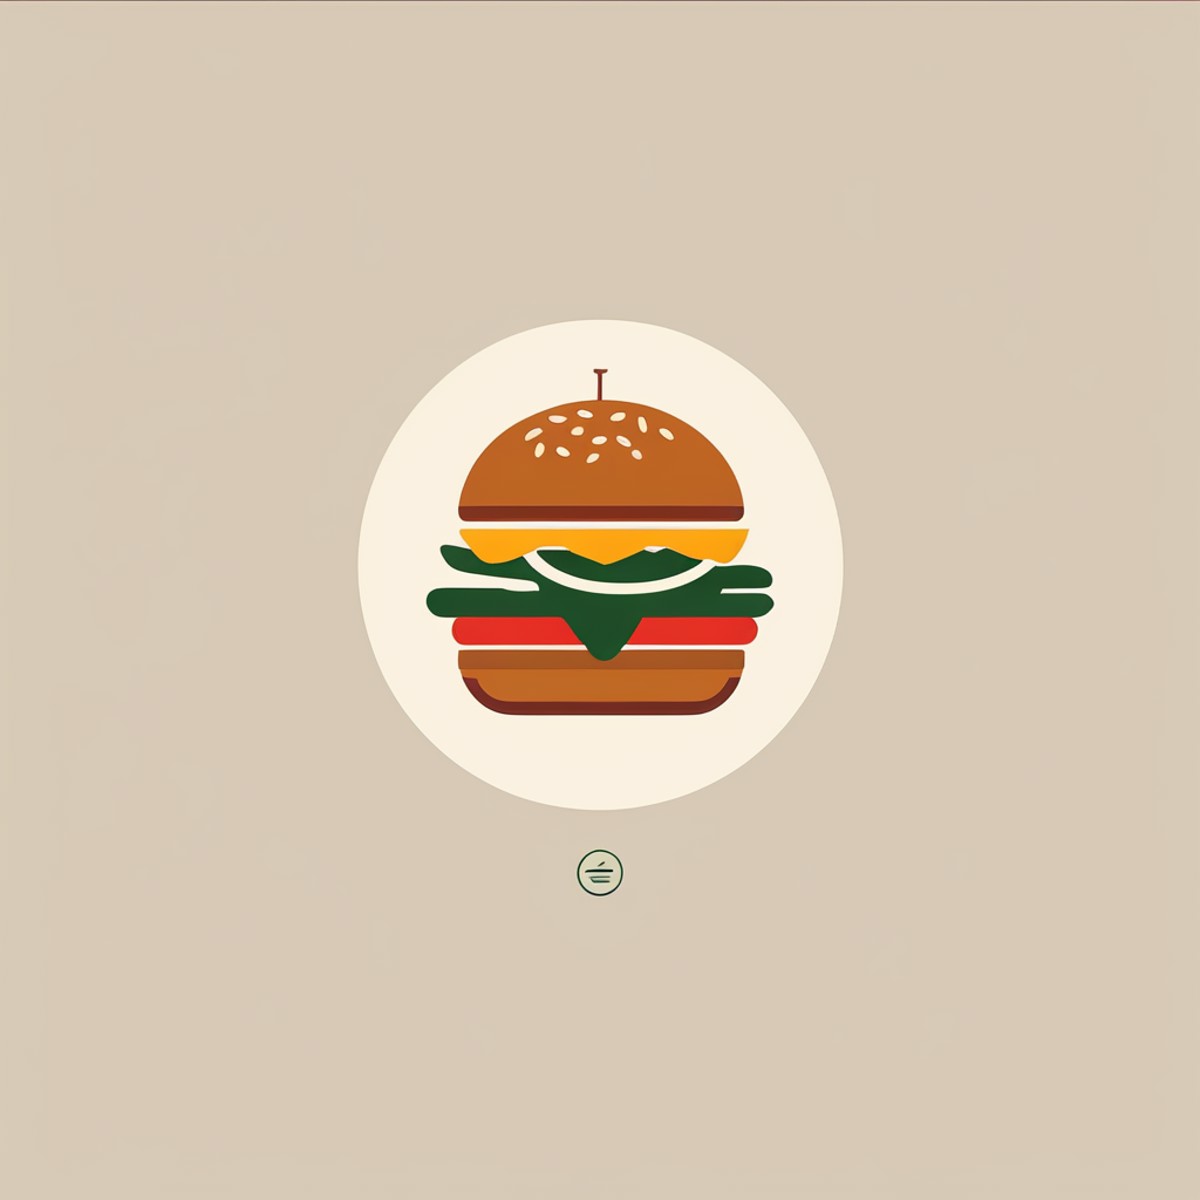 a logo for a burguer shop, burguer, food, minimalist,  LogoRedAF, <lora:LogoRedmond_LogoRedAF:1>